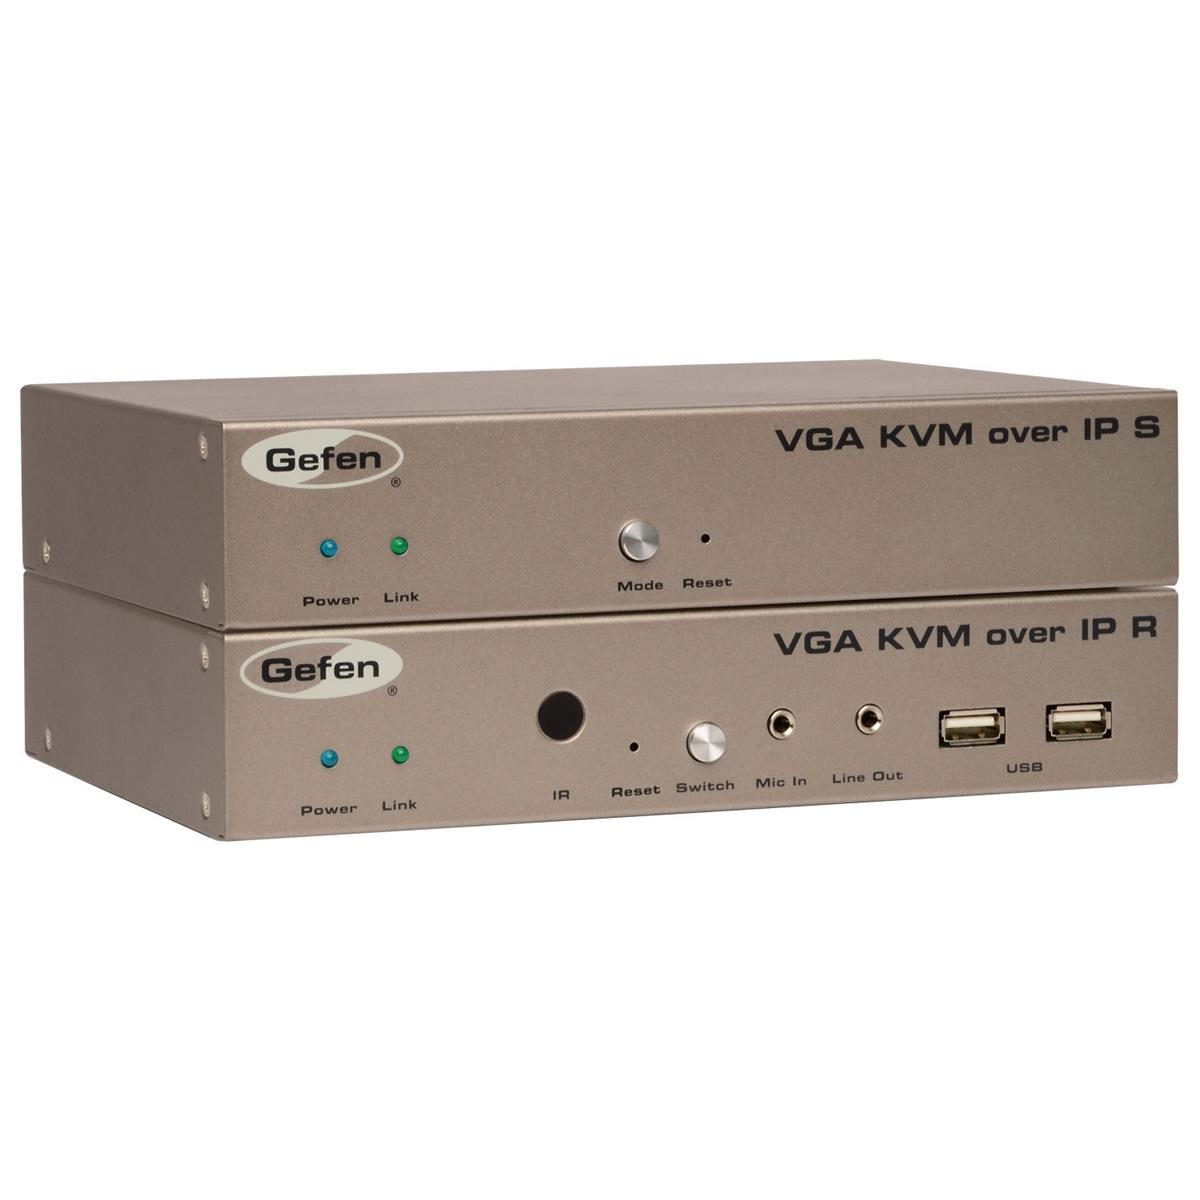 

Gefen VGA and KVM Over IP Sender